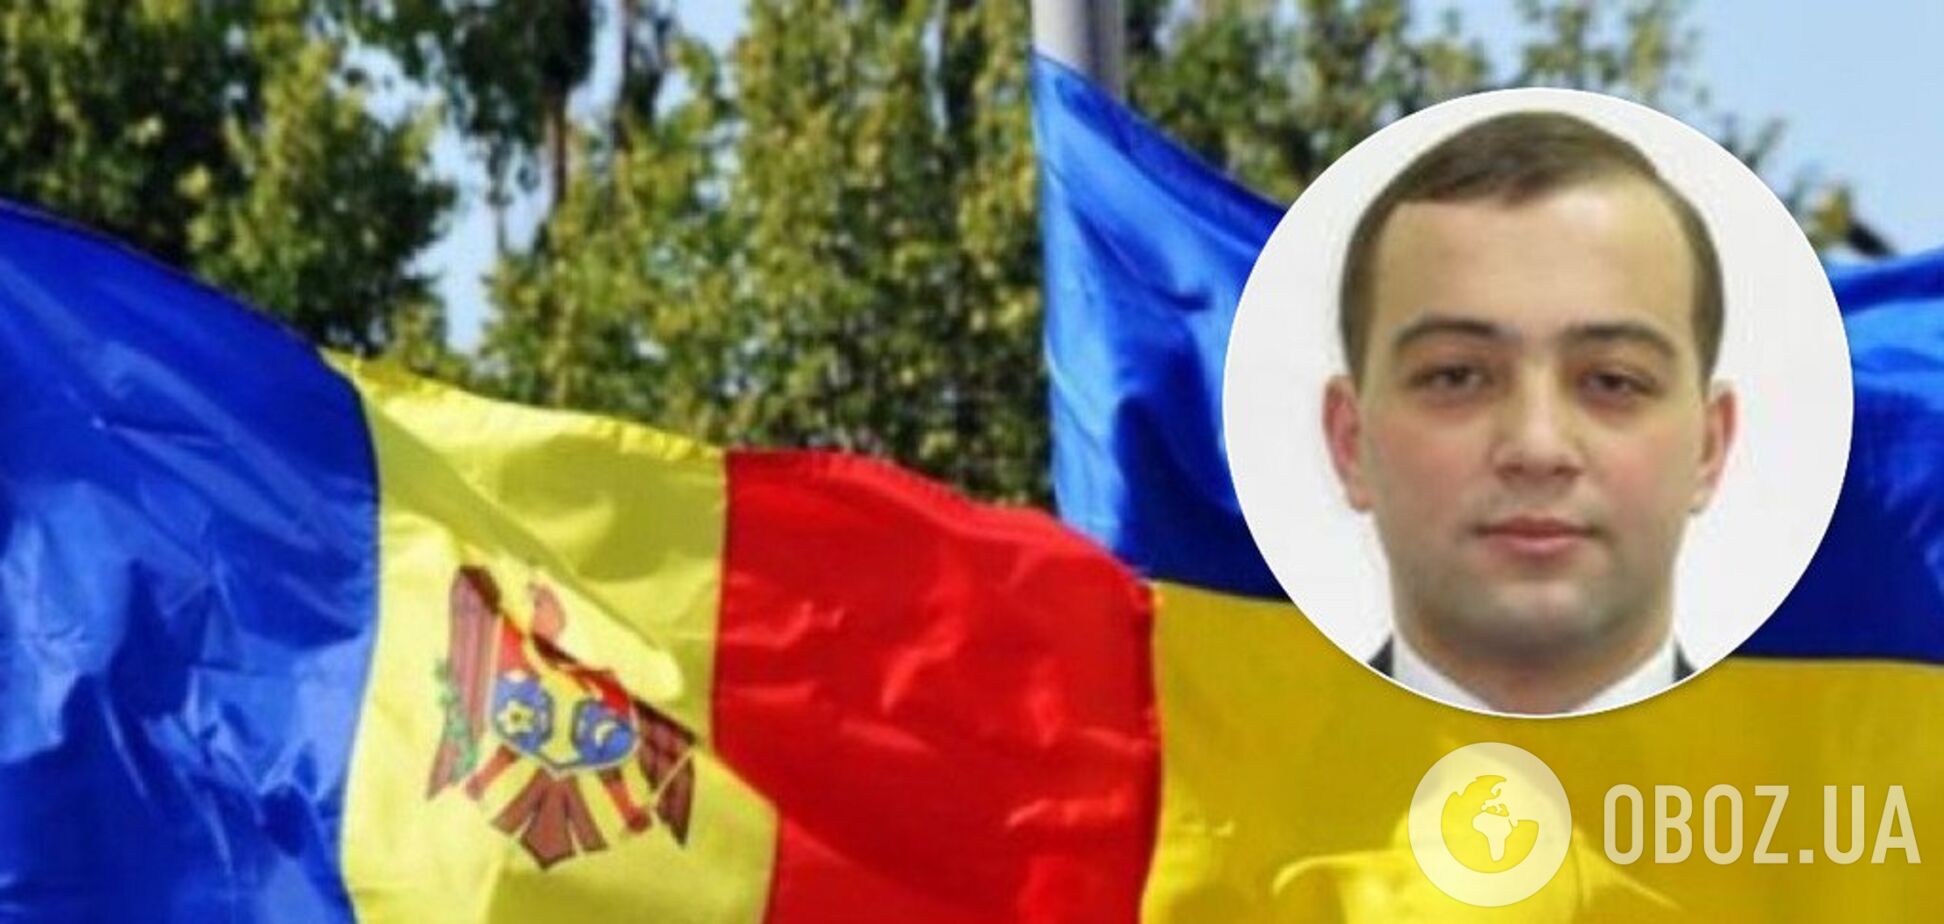 Віддати румунам частину України: в мережі розігнали фейк